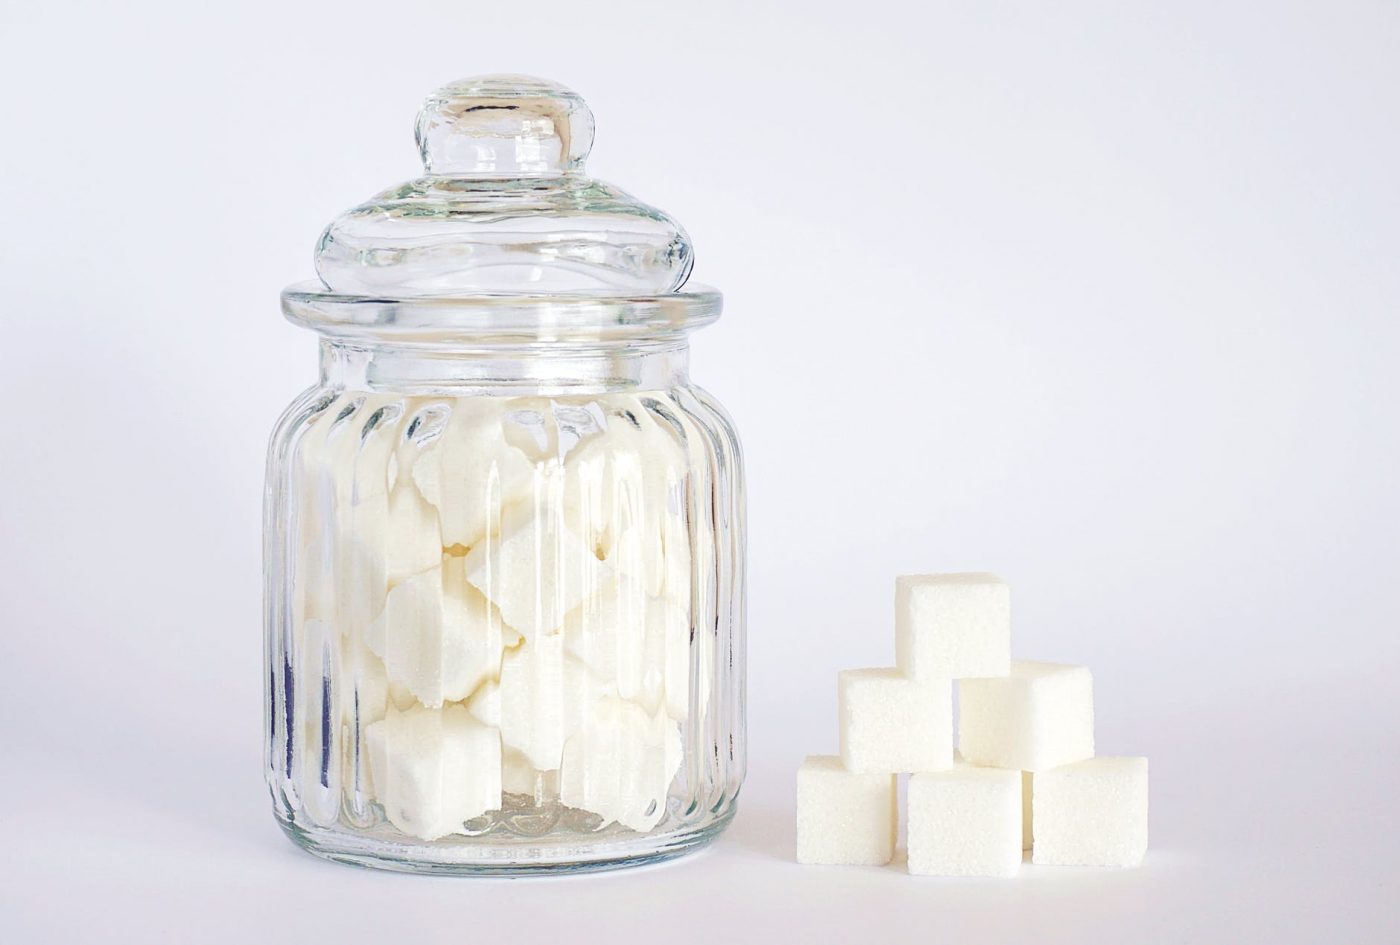 Kako smanjiti visoki šećer u krvi? Ovih 12 prirodnih načina vam mogu pomoći￼